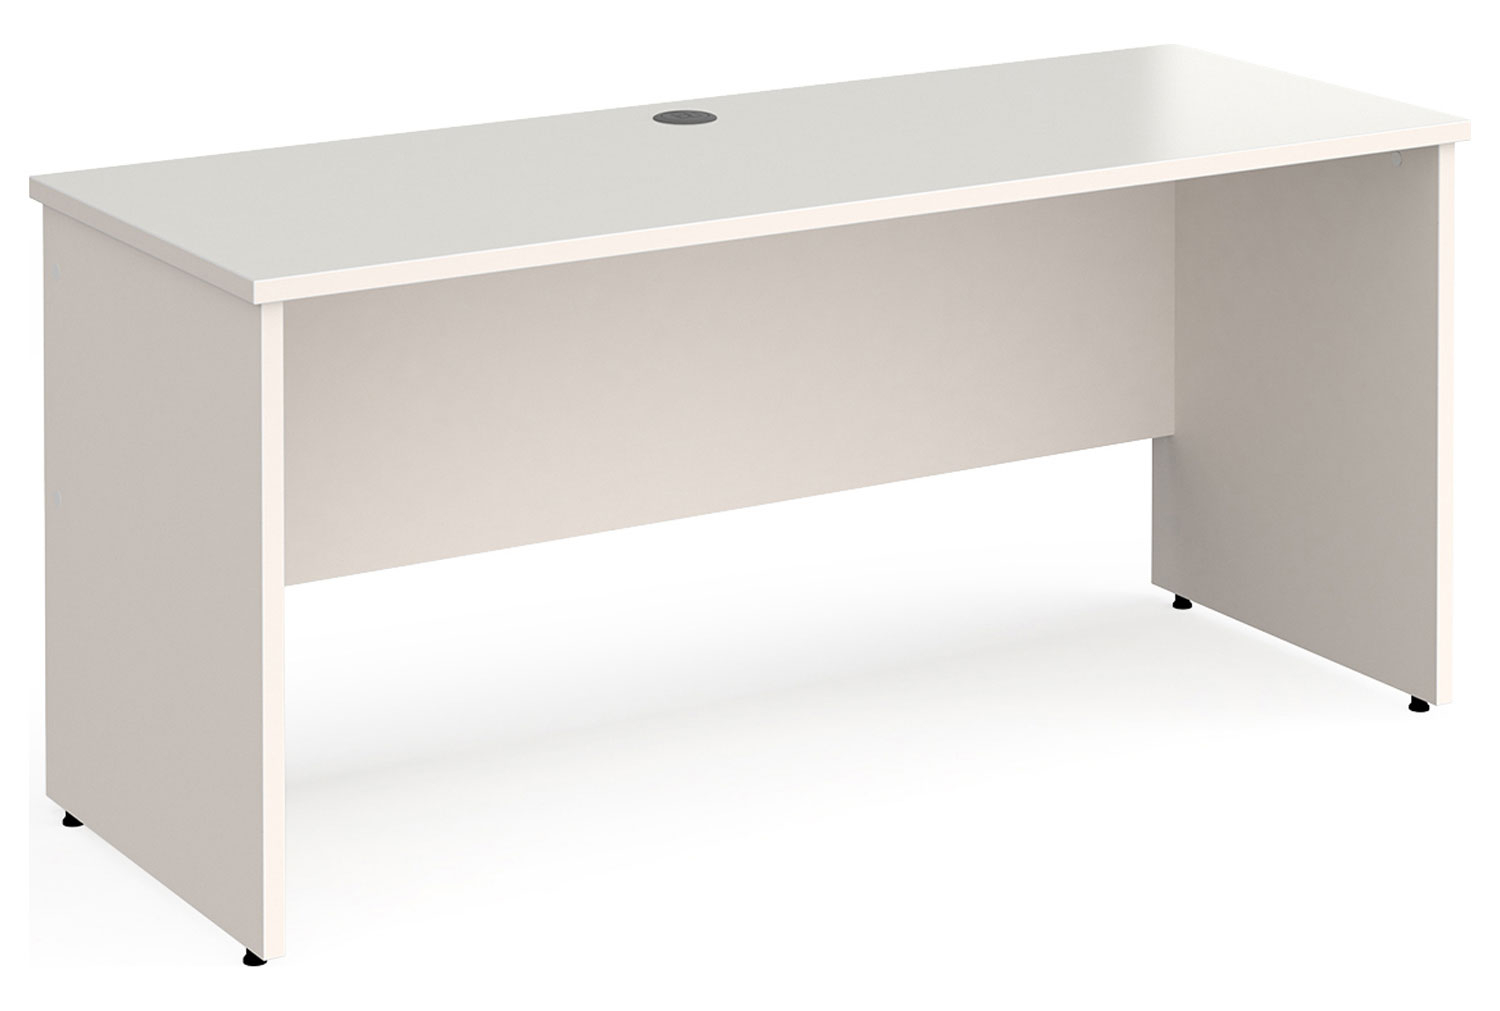 All White Panel End Narrow Rectangular Office Desk, 160w60dx73h (cm)